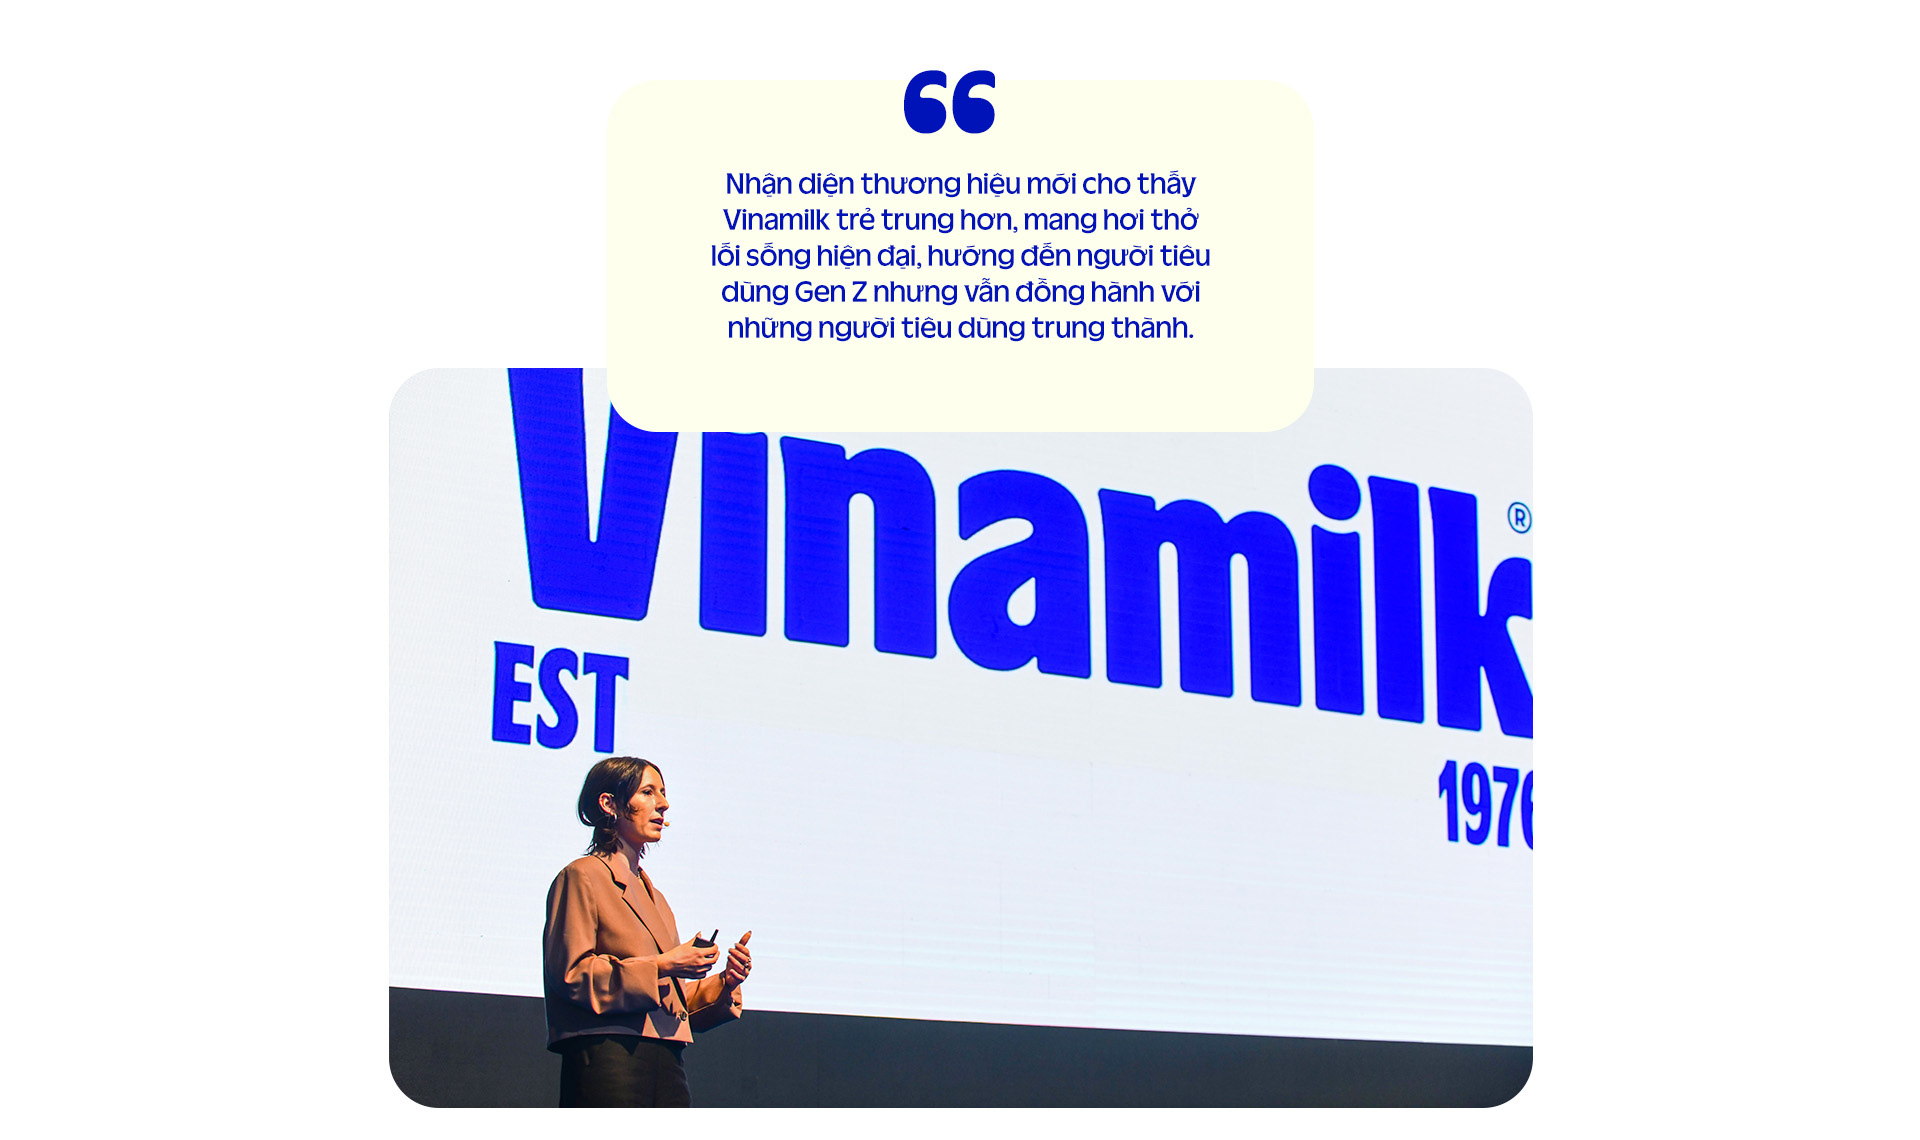 Giám đốc điều hành marketing Vinamilk: Kể tiếp những câu chuyện thú vị với người tiêu dùng- Ảnh 10.